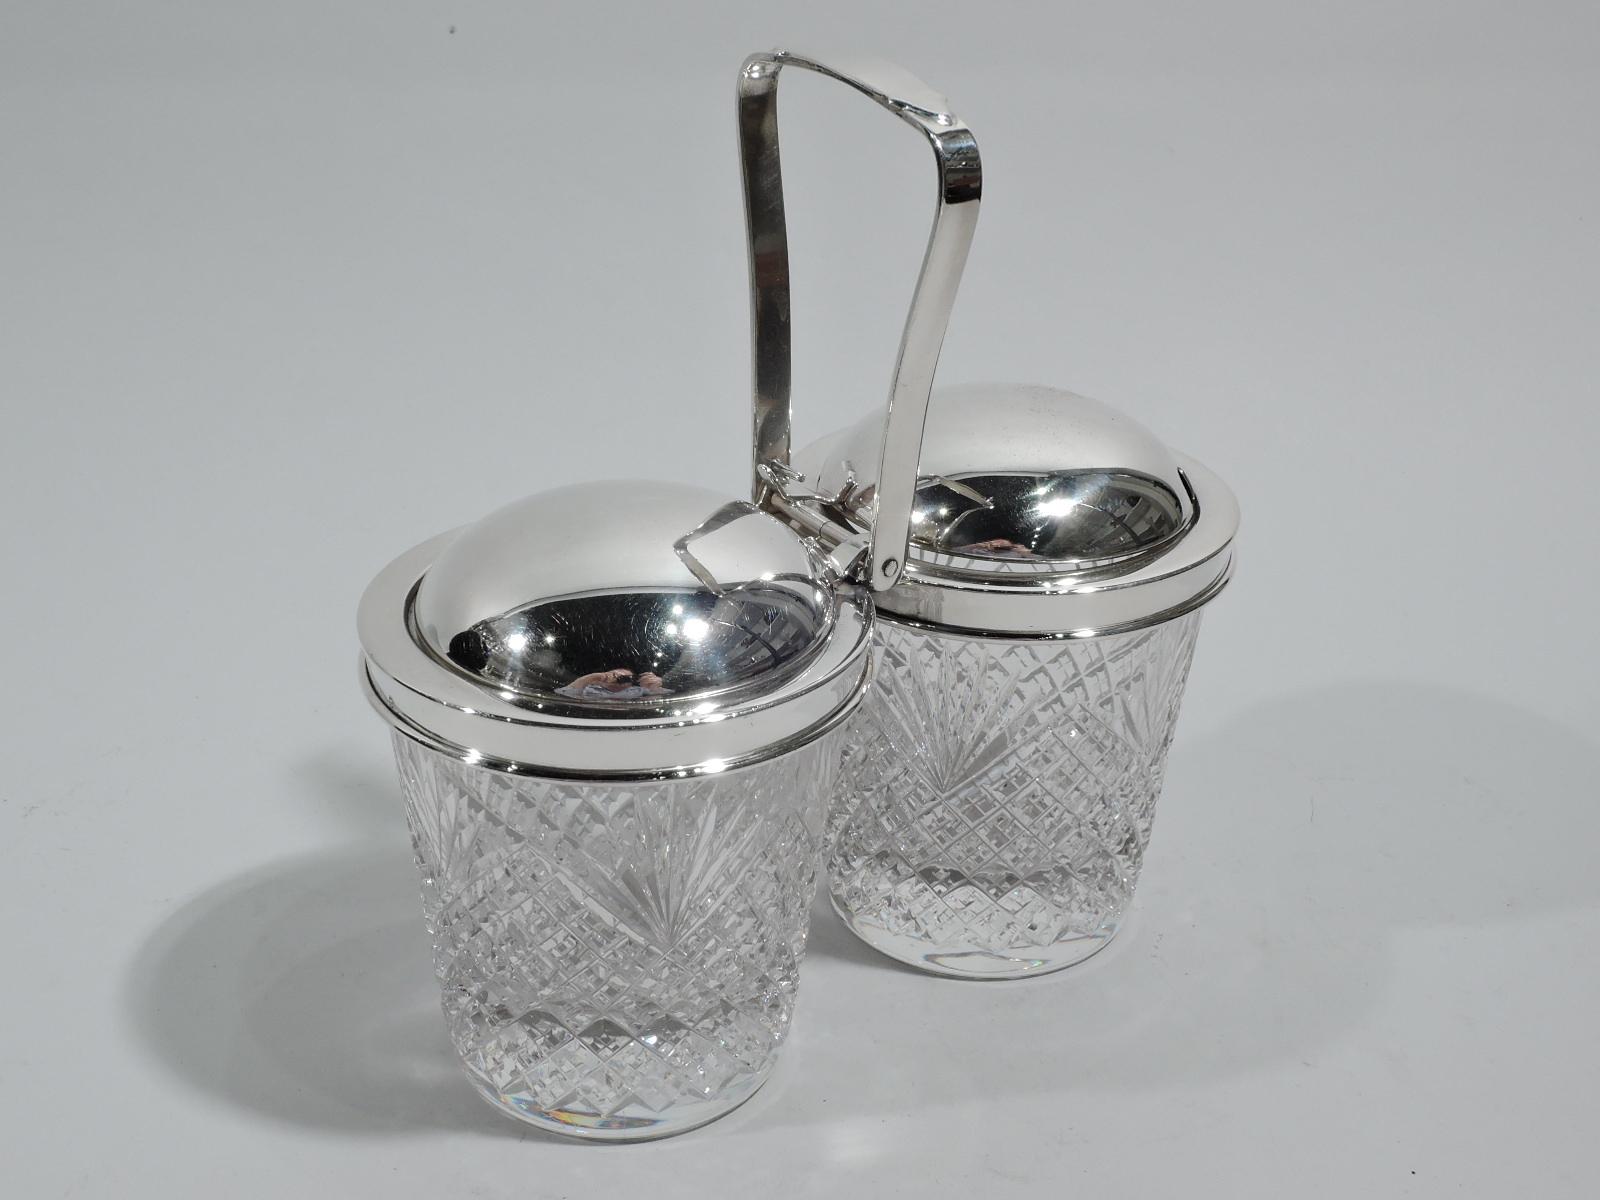 Altmodisches Doppelkonfitürenglas aus Sterlingsilber und Glas, um 1950. Ausgeliefert von Tiffany & Co. in New York, ca. 1950. Zwei Gläser mit geraden und sich verjüngenden Seiten und erhabenem Windel- und Farnmuster. Halsbänder aus Sterlingsilber